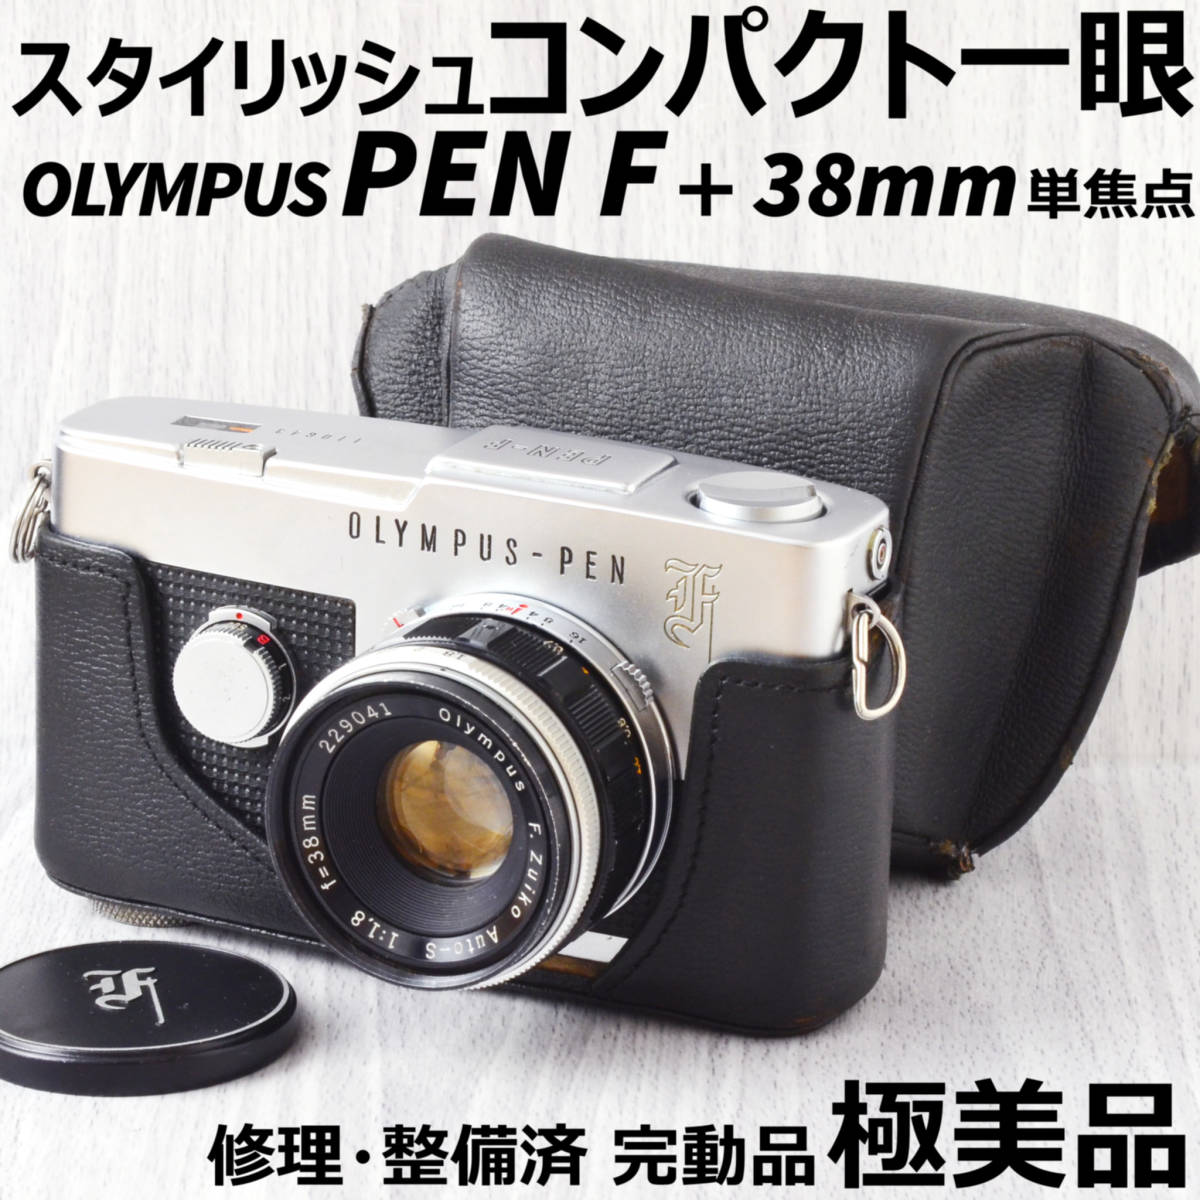 美品! OLYMPUS PEN F + 38mm f1.8 単焦点レンズ ケース付 修理・整備済 完動品 - pharmacube.jp